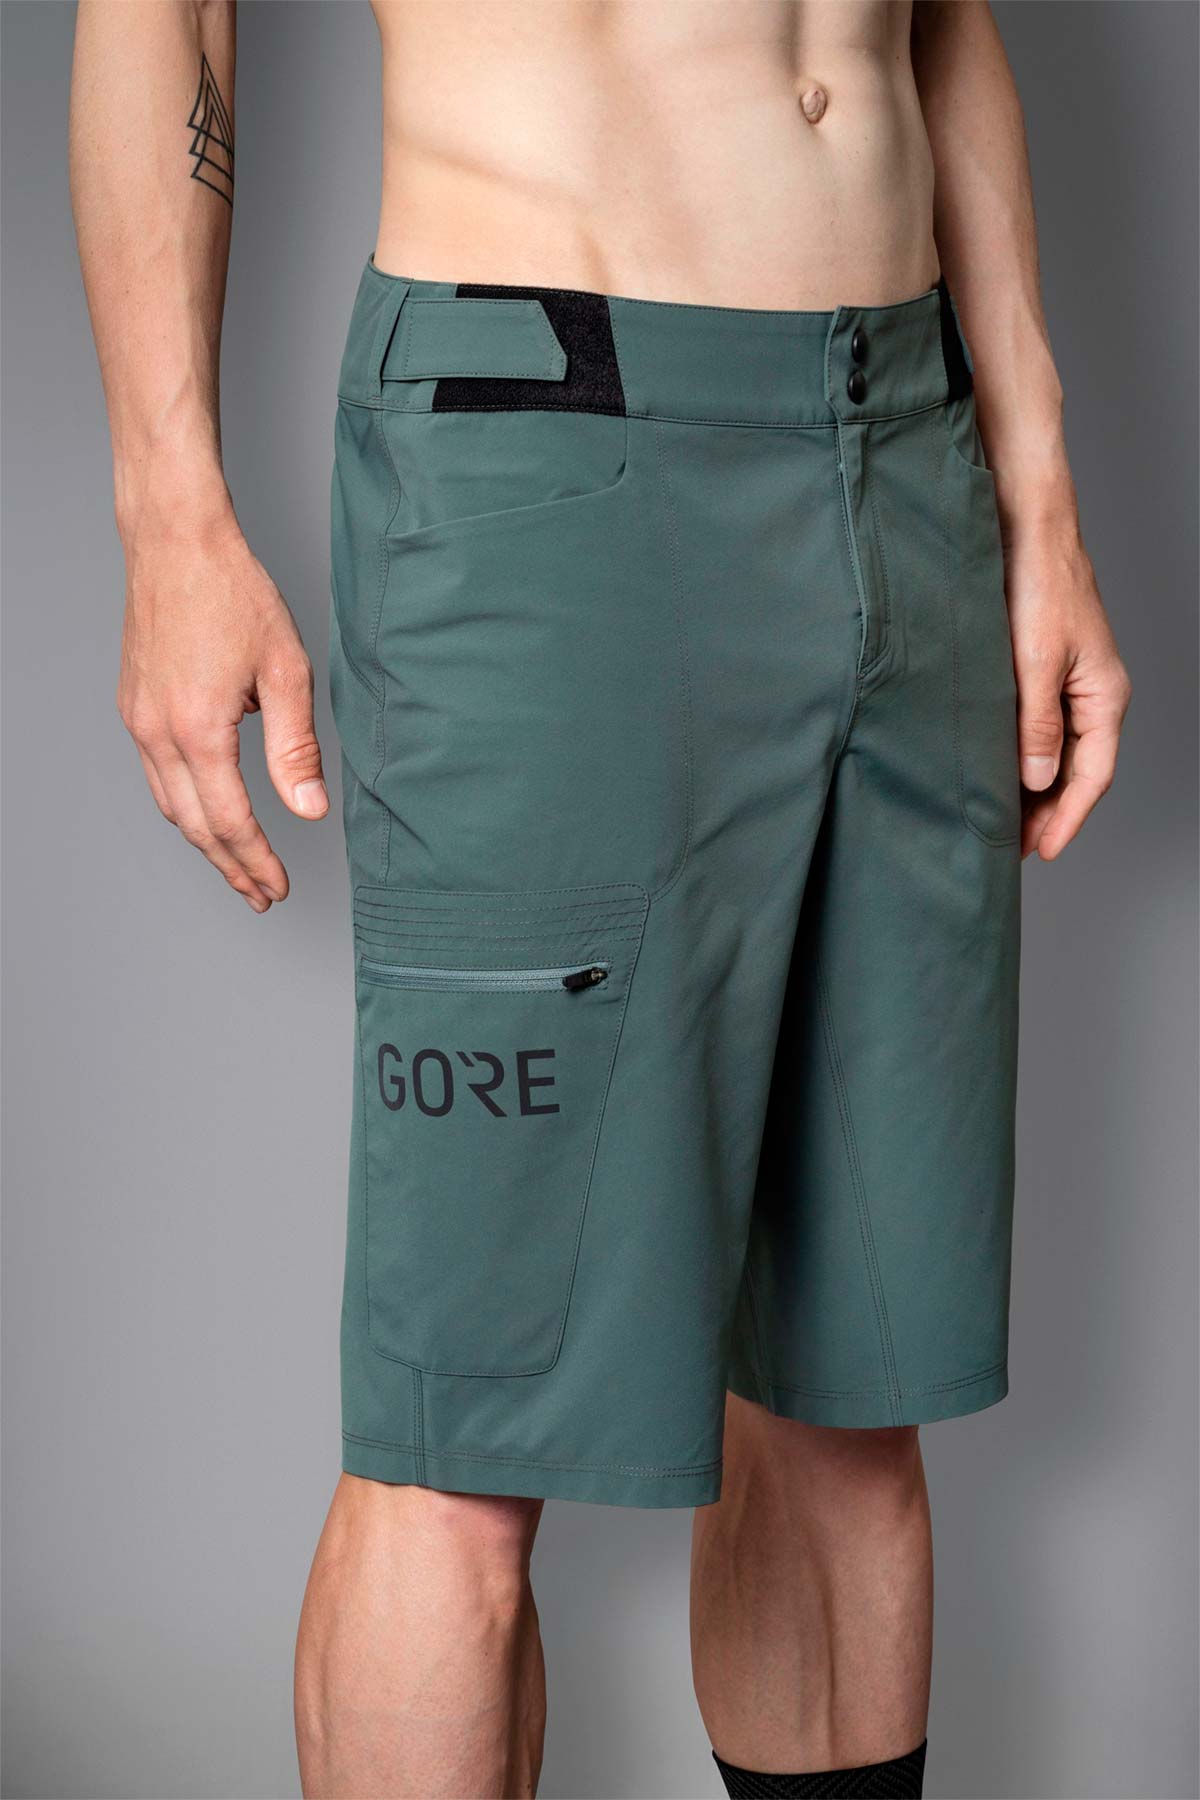 En TodoMountainBike: GORE Wear amplía su gama de pantalones cortos MTB